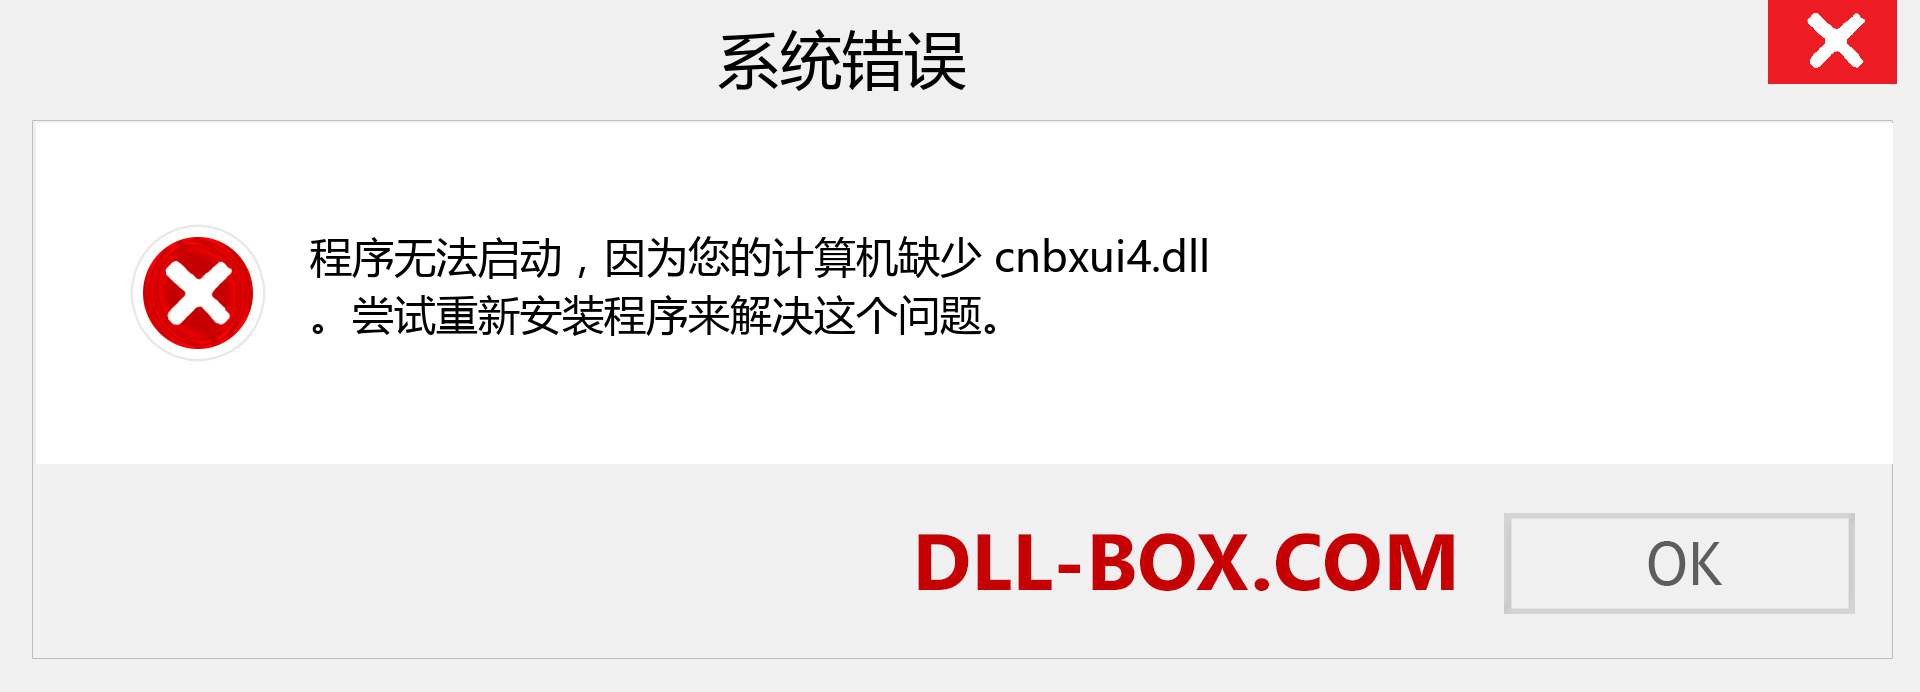 cnbxui4.dll 文件丢失？。 适用于 Windows 7、8、10 的下载 - 修复 Windows、照片、图像上的 cnbxui4 dll 丢失错误